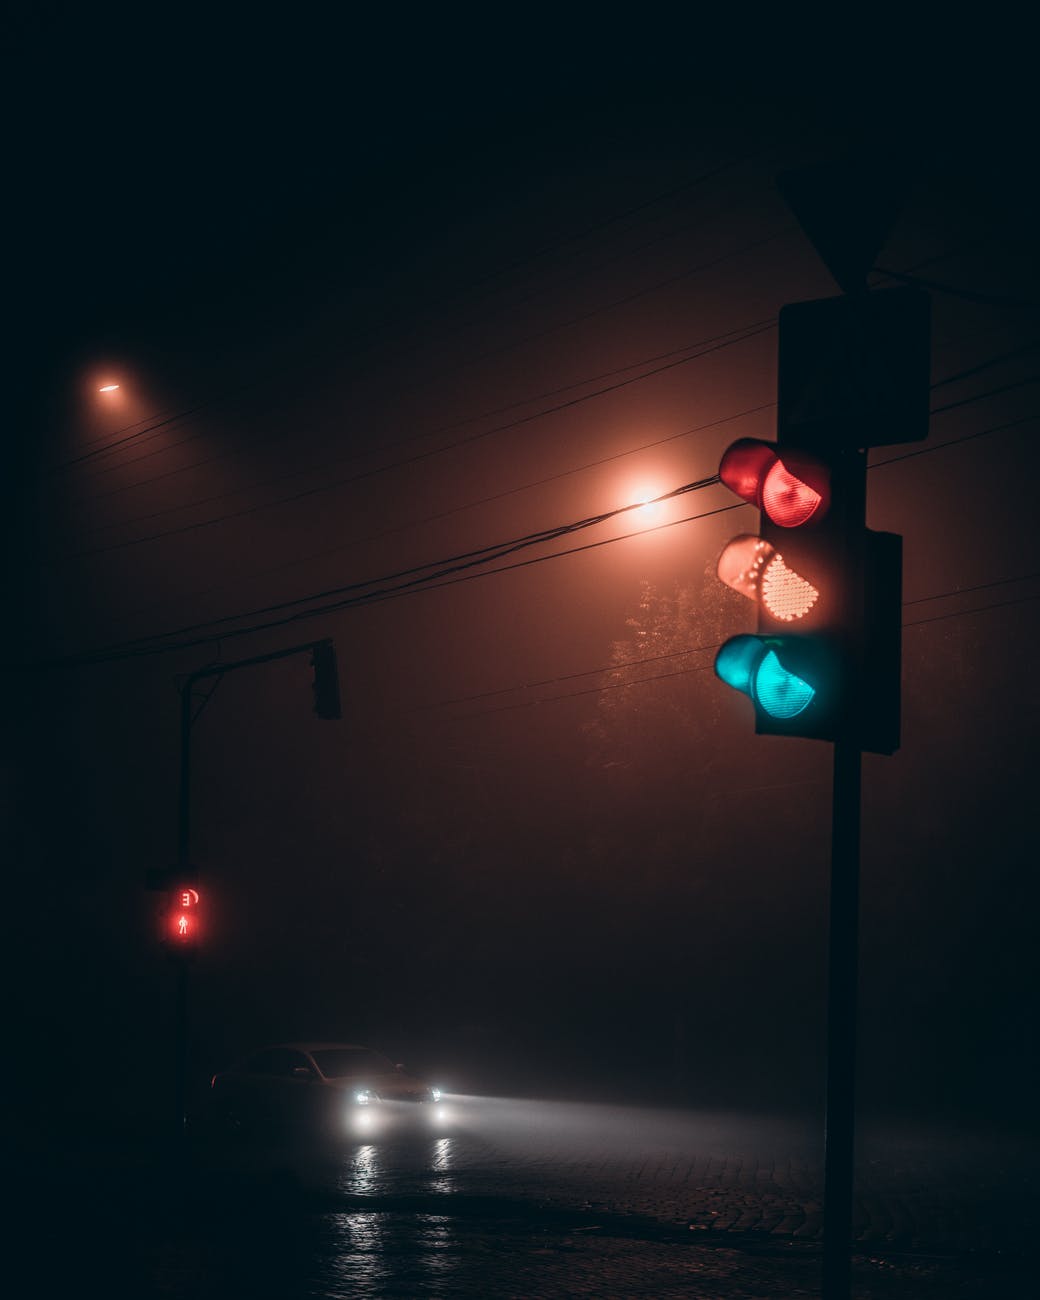 traffic light on road at night